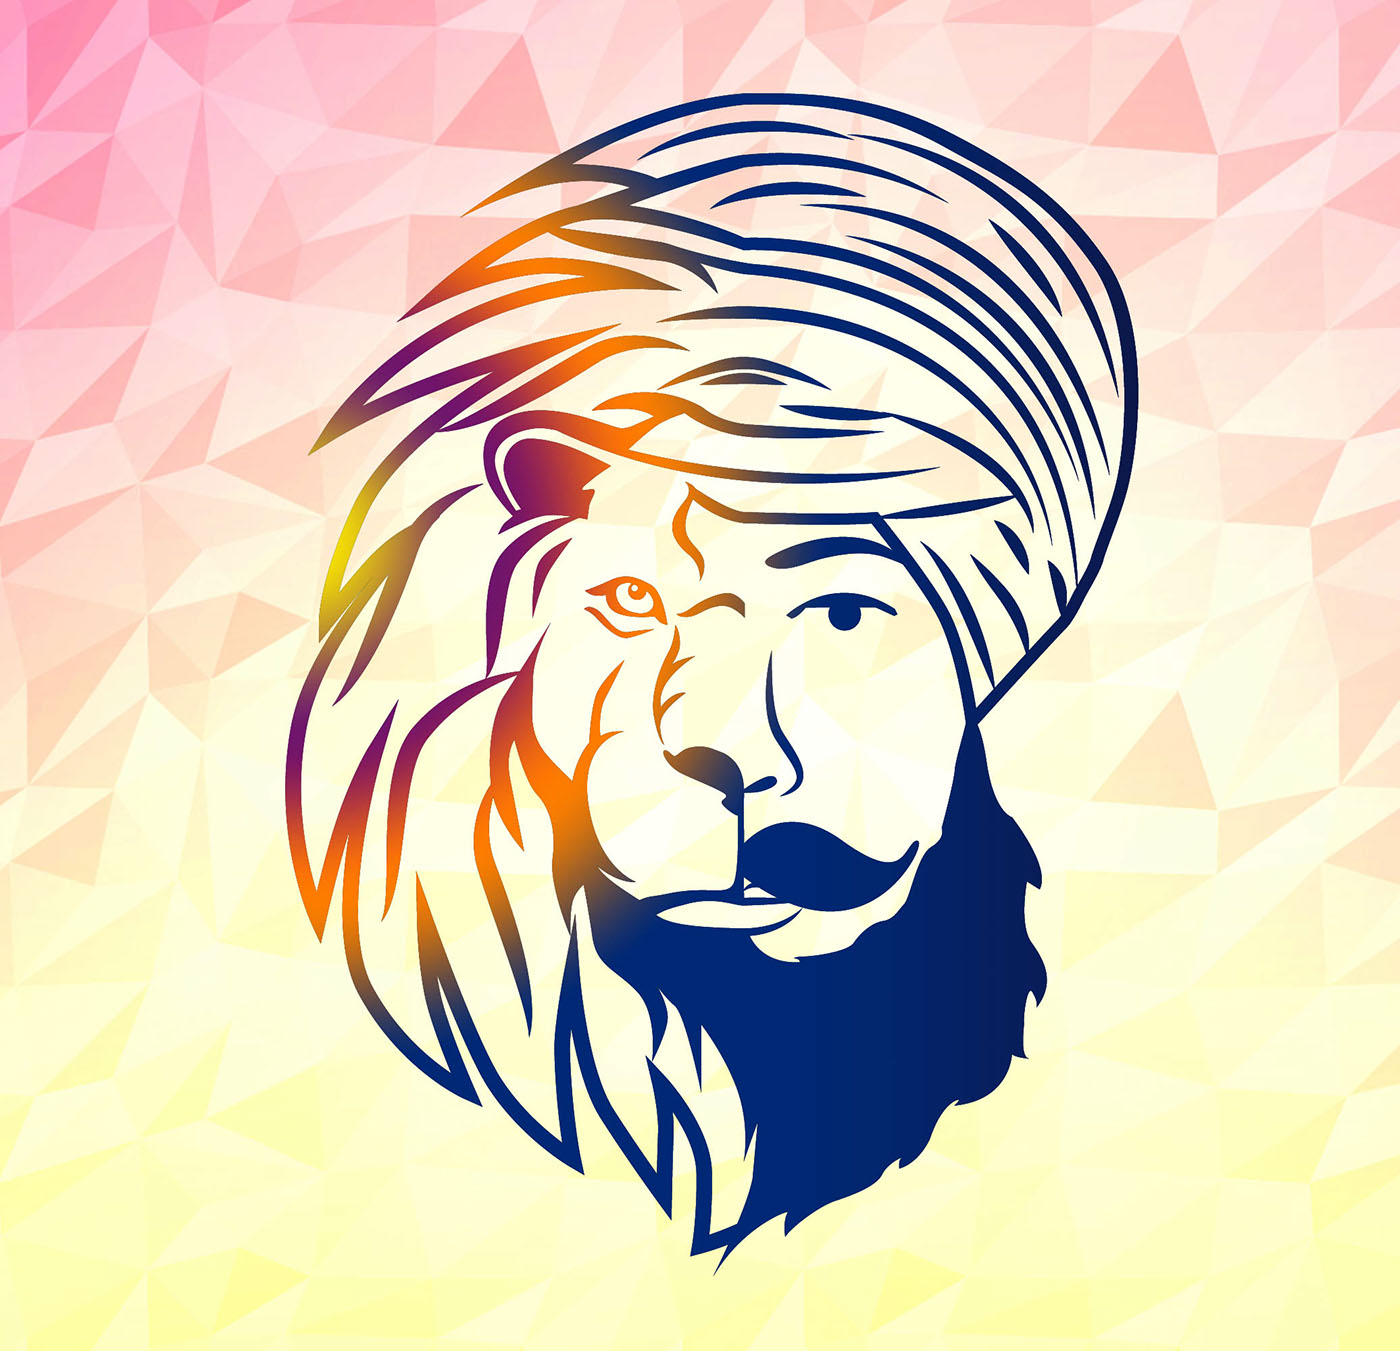 Singh King on Behance